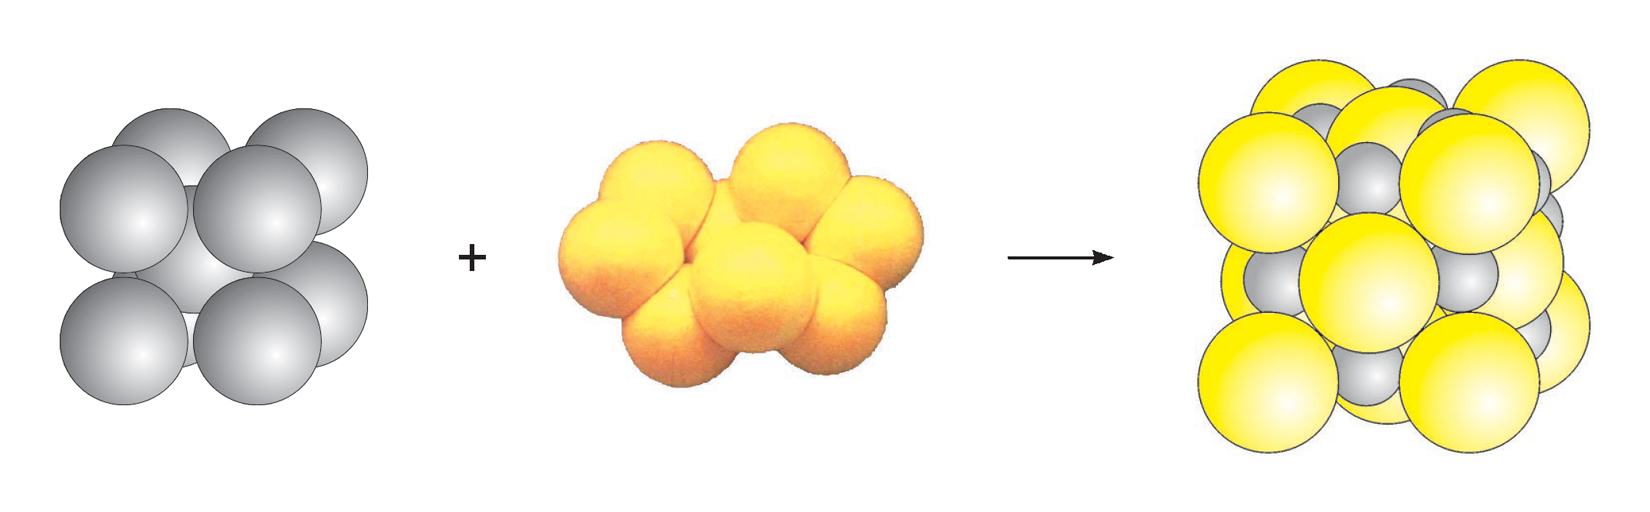 Fotografija prikazuje modele atoma željeza i sumpora te njihov spoj. Željezo je prikazano kao 5 sivih kuglica složenih u oblik kocke, sumpor je nepravilna žuta nakupina osam žutih kuglica.Živin (II) oksid je kocka koja se sastoji od pravilno raspoređenih kuglica, atoma željeza i sumpora. Atomi željeza su manji od atoma sumpora.